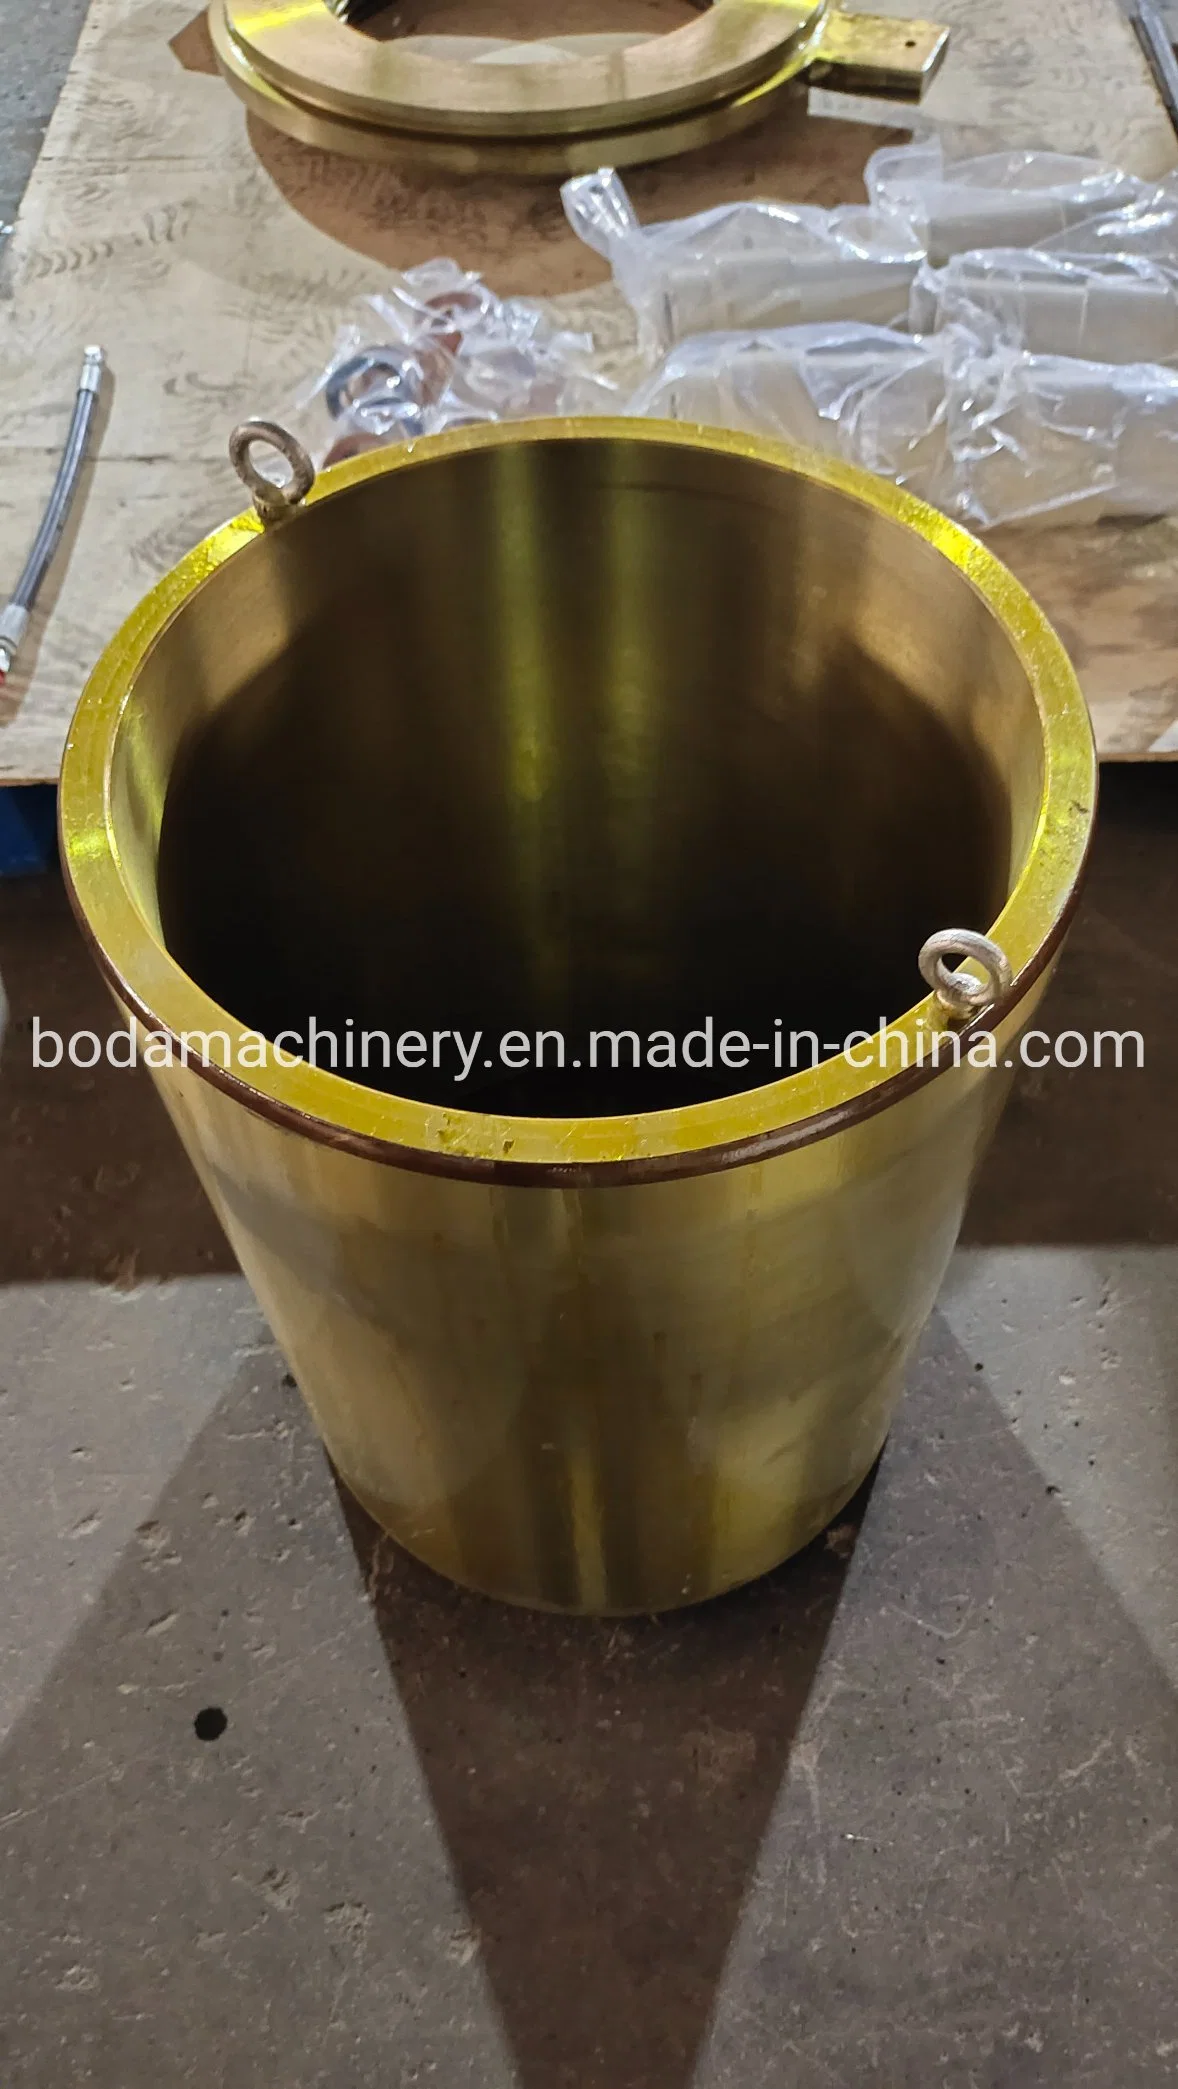 britador de cone partes separadas se aplicam ao Gp200 eixo principal da bucha de bronze